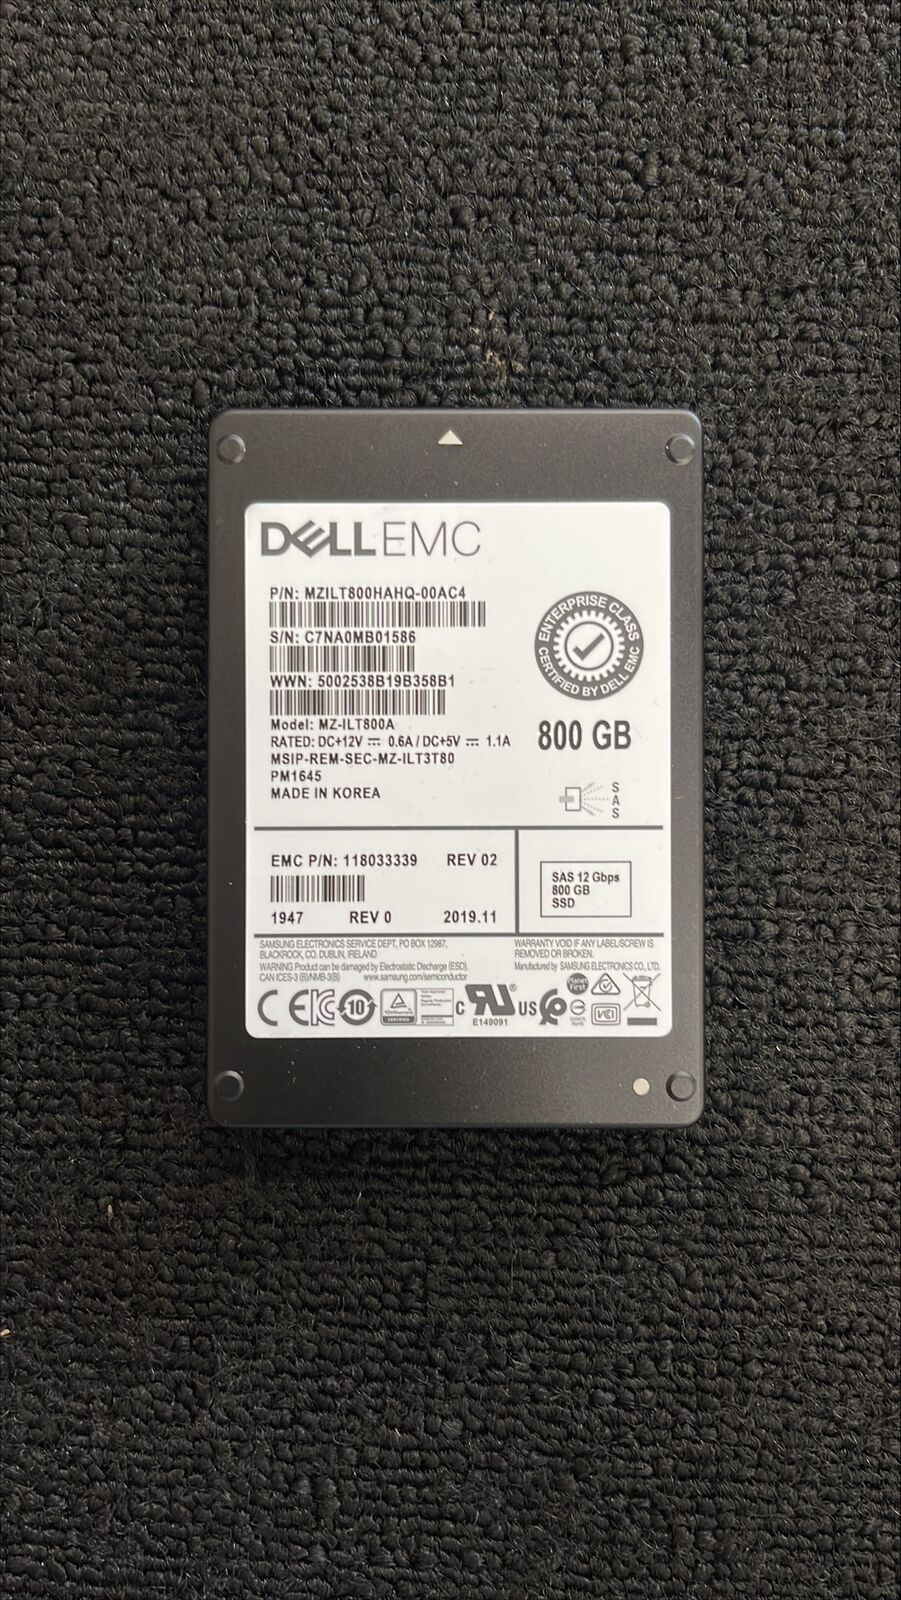 Dell EMC 800GB 12GBp/s SAS 2.5in SSD 118033339